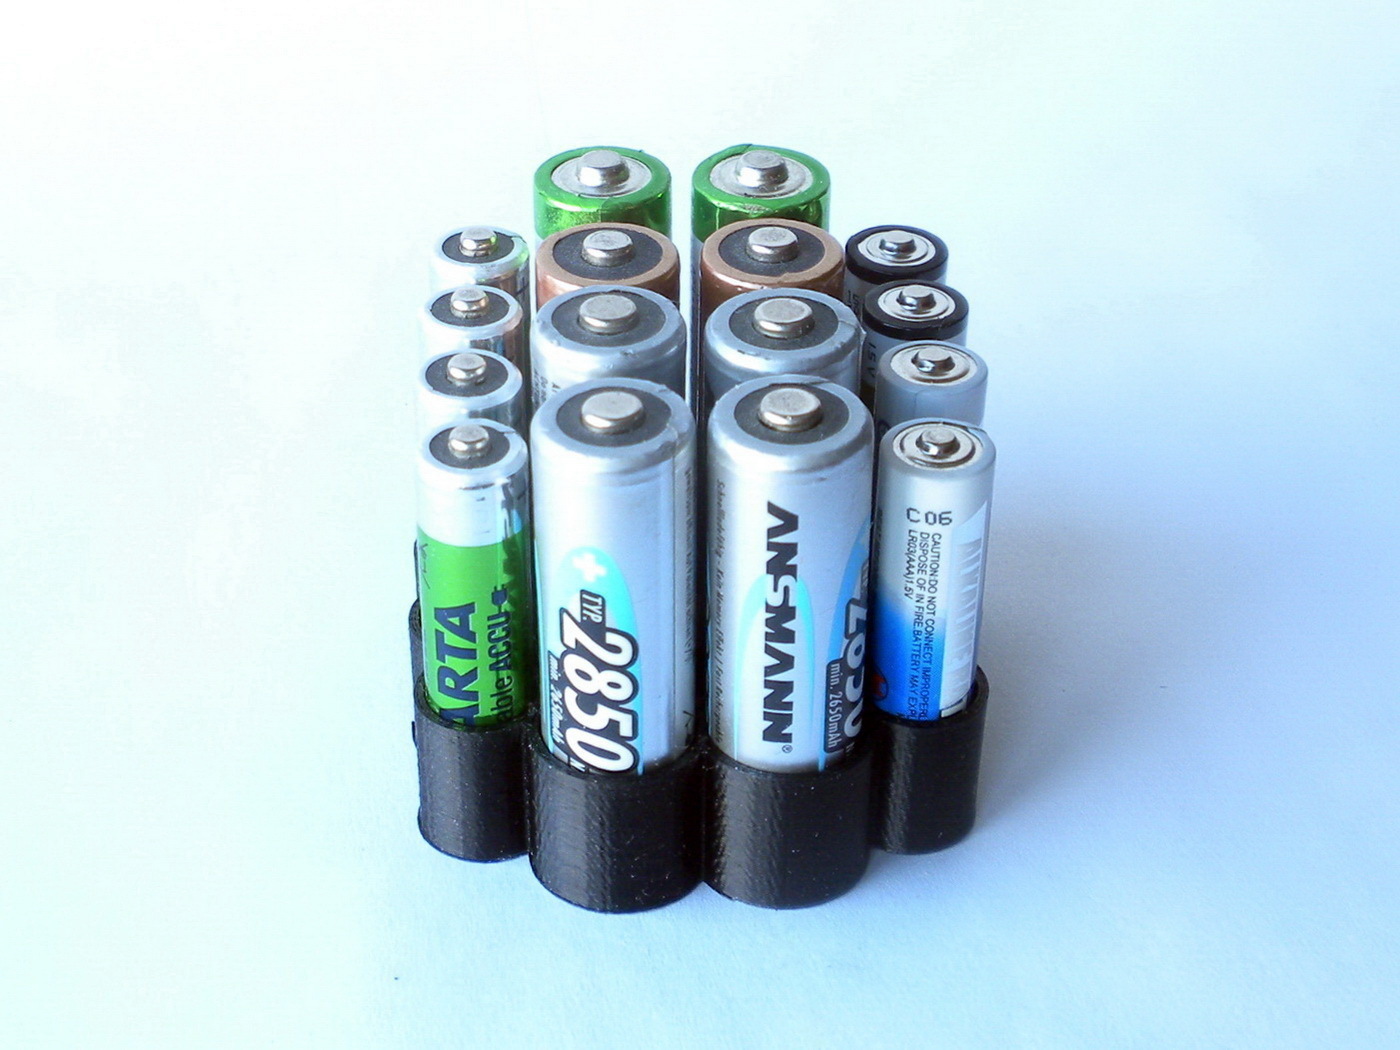 Aa battery. 3xlr03 батарейка. Battery AA AAA STL. Бокс на 3 батарейки АА. 3д модель холдер для ААА батареек.